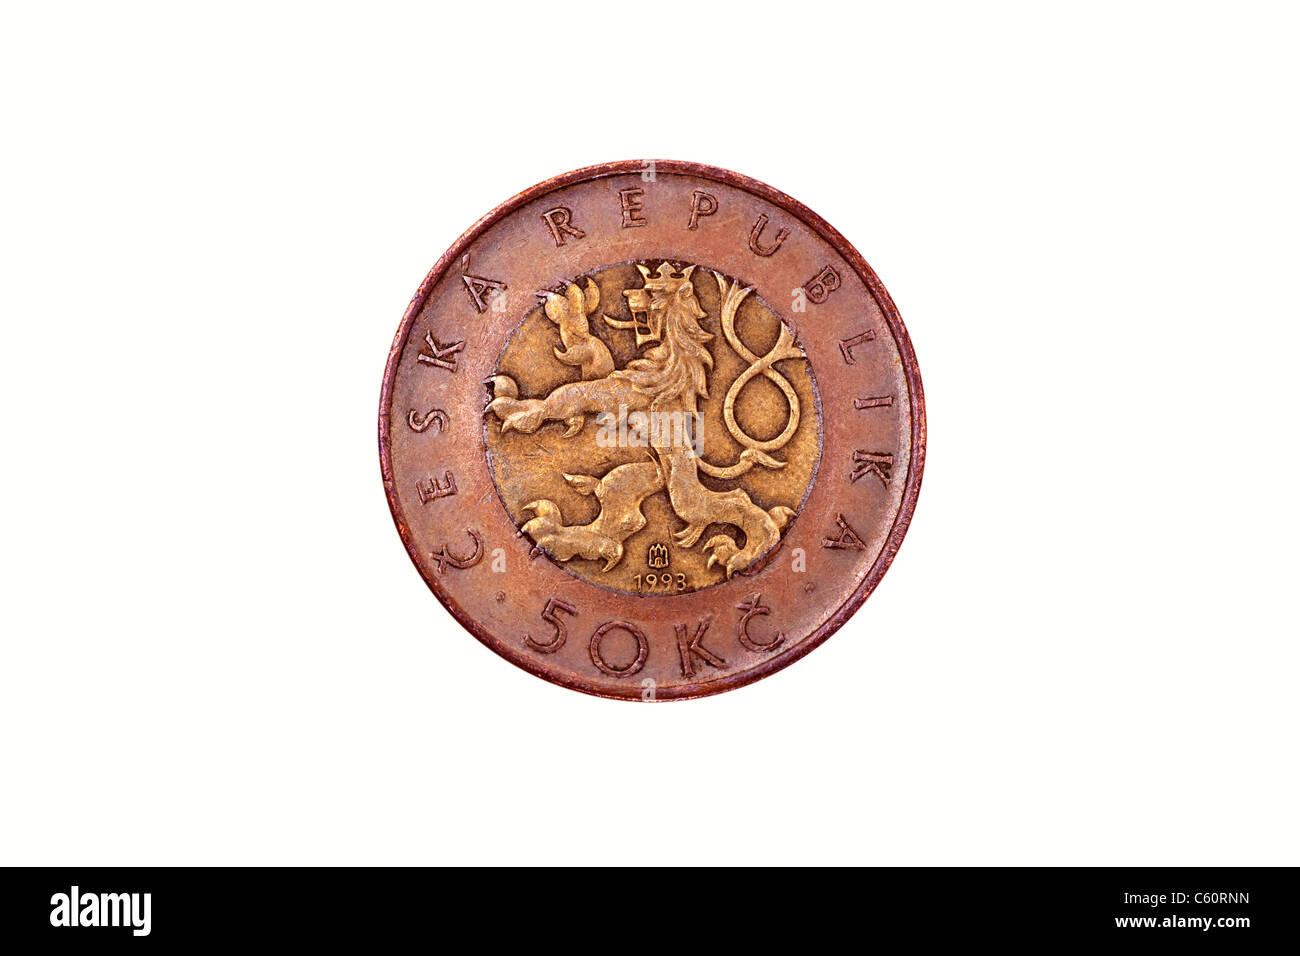 Detailansicht einer tschechischen 50 Kronen Münze | photo détail d'une pièce de monnaie couronne tchèque 50 Banque D'Images